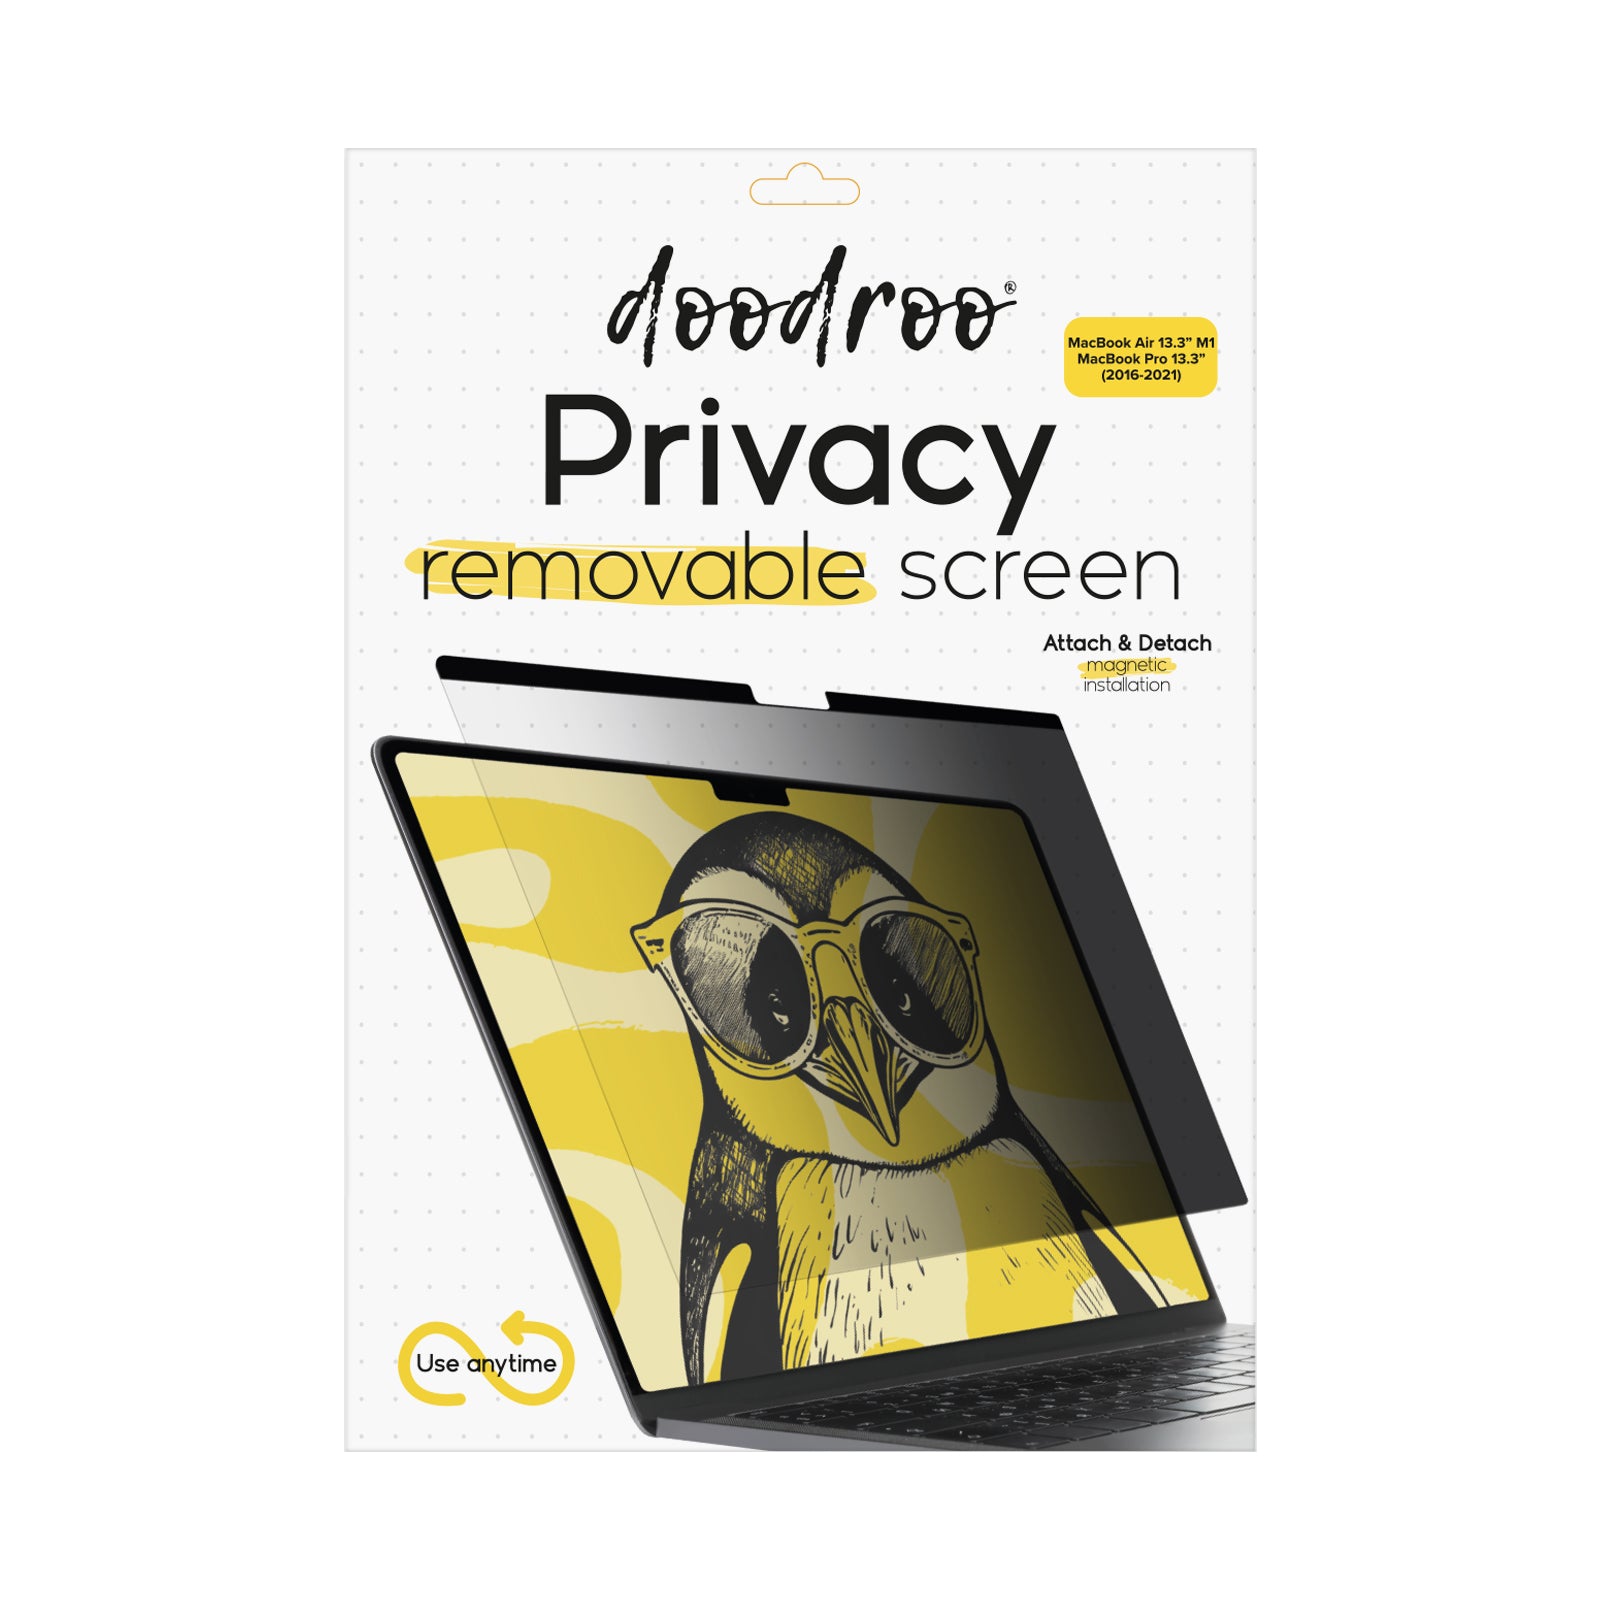 Protector de pantalla extraíble con efecto privacidad para MacBook Air 13,3" M1/MacBook Pro 13,3" (2016-2021)